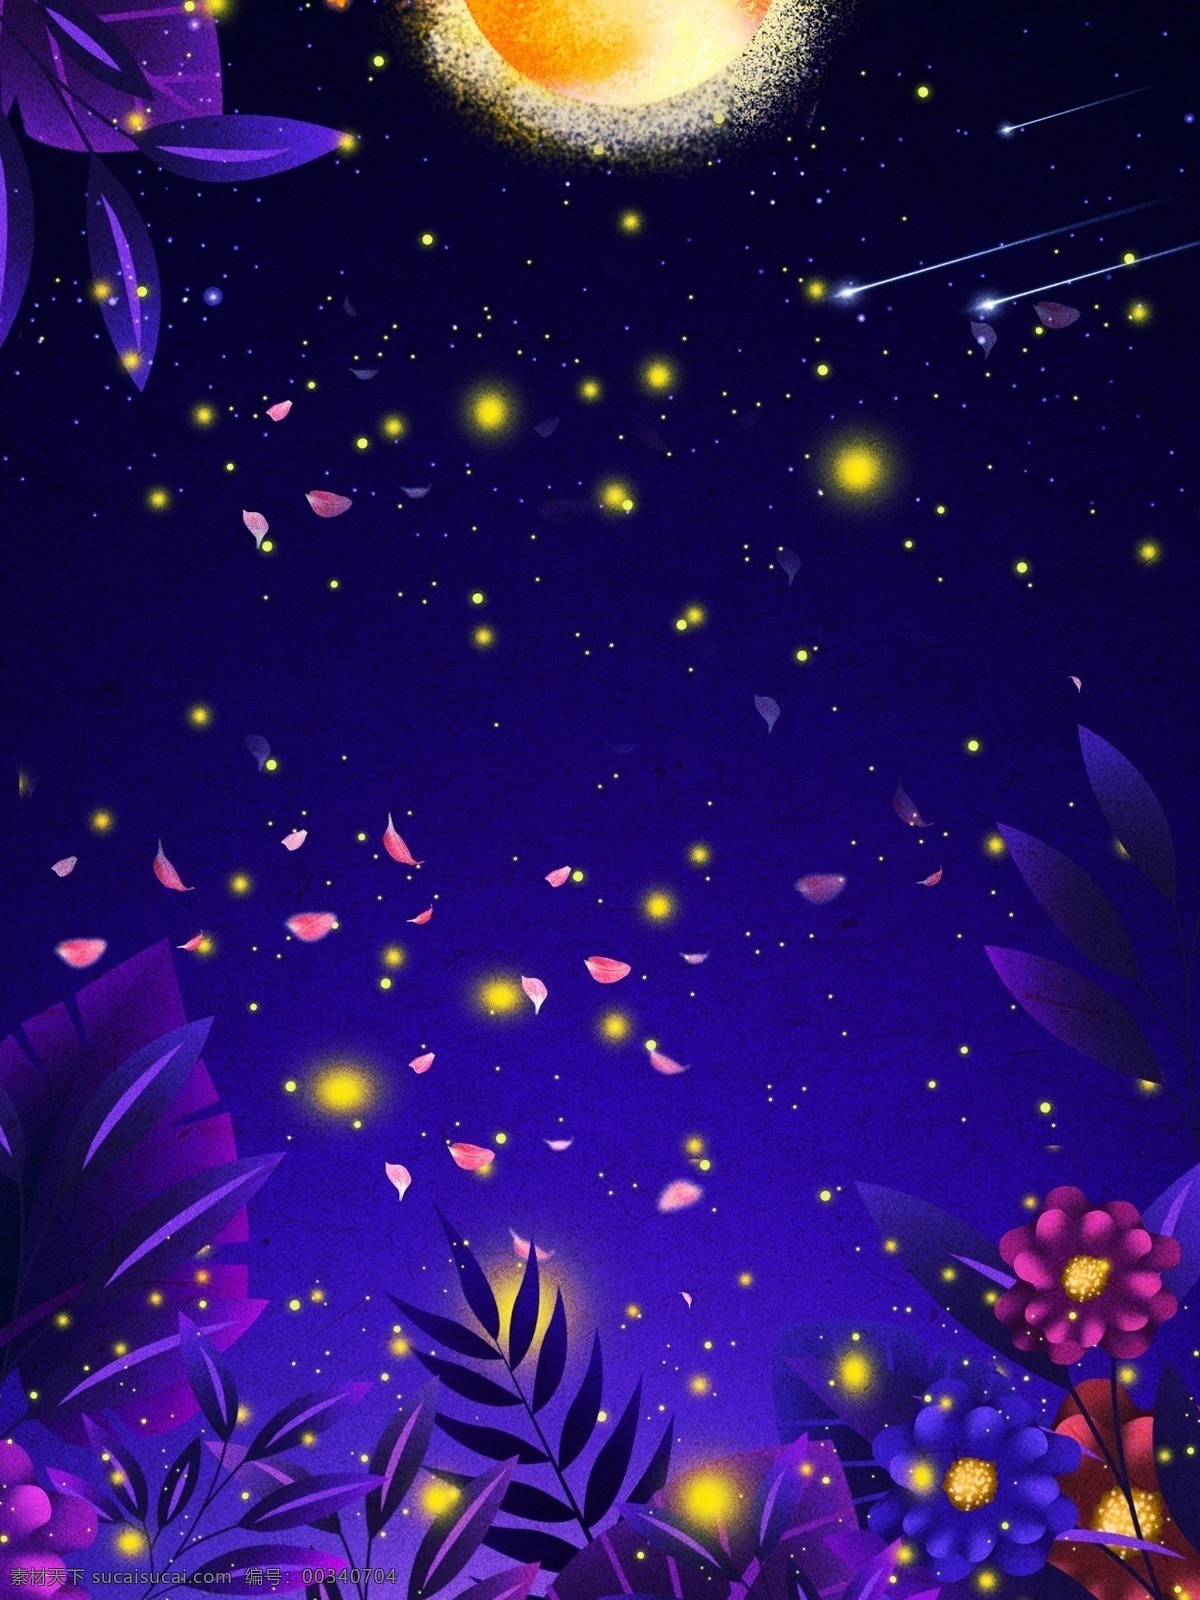 唯美 蓝色 星空 背景 图 格式 通用背景 手绘背景 星空背景 卡通背景 广告背景 月亮 植物背景